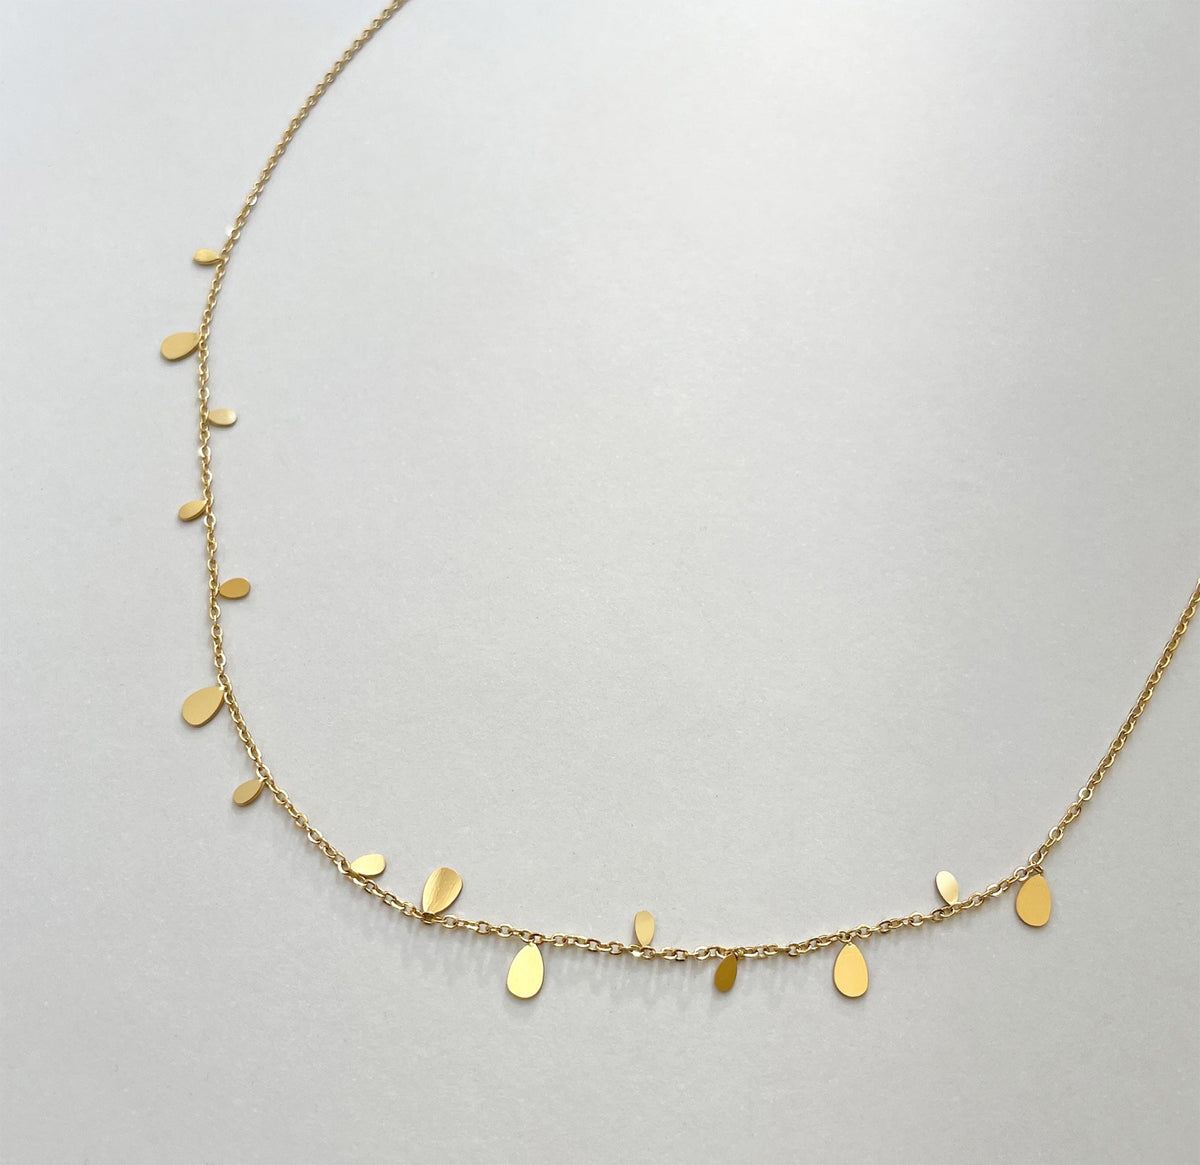 gold tear drop necklace waterproof jewelry